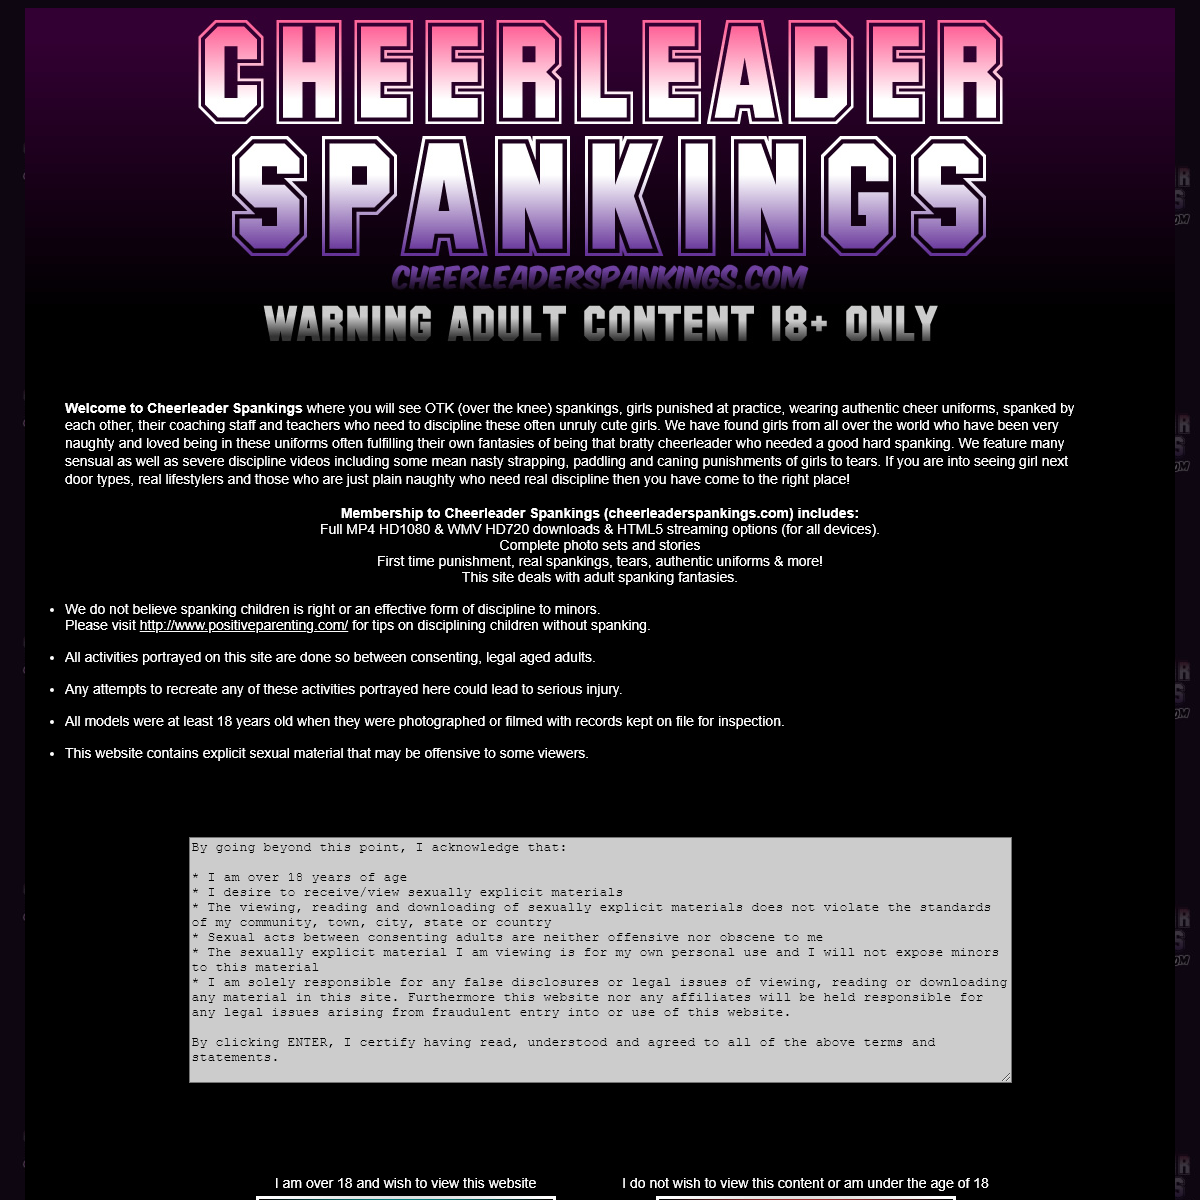 A complete backup of www.cheerleaderspankings.com